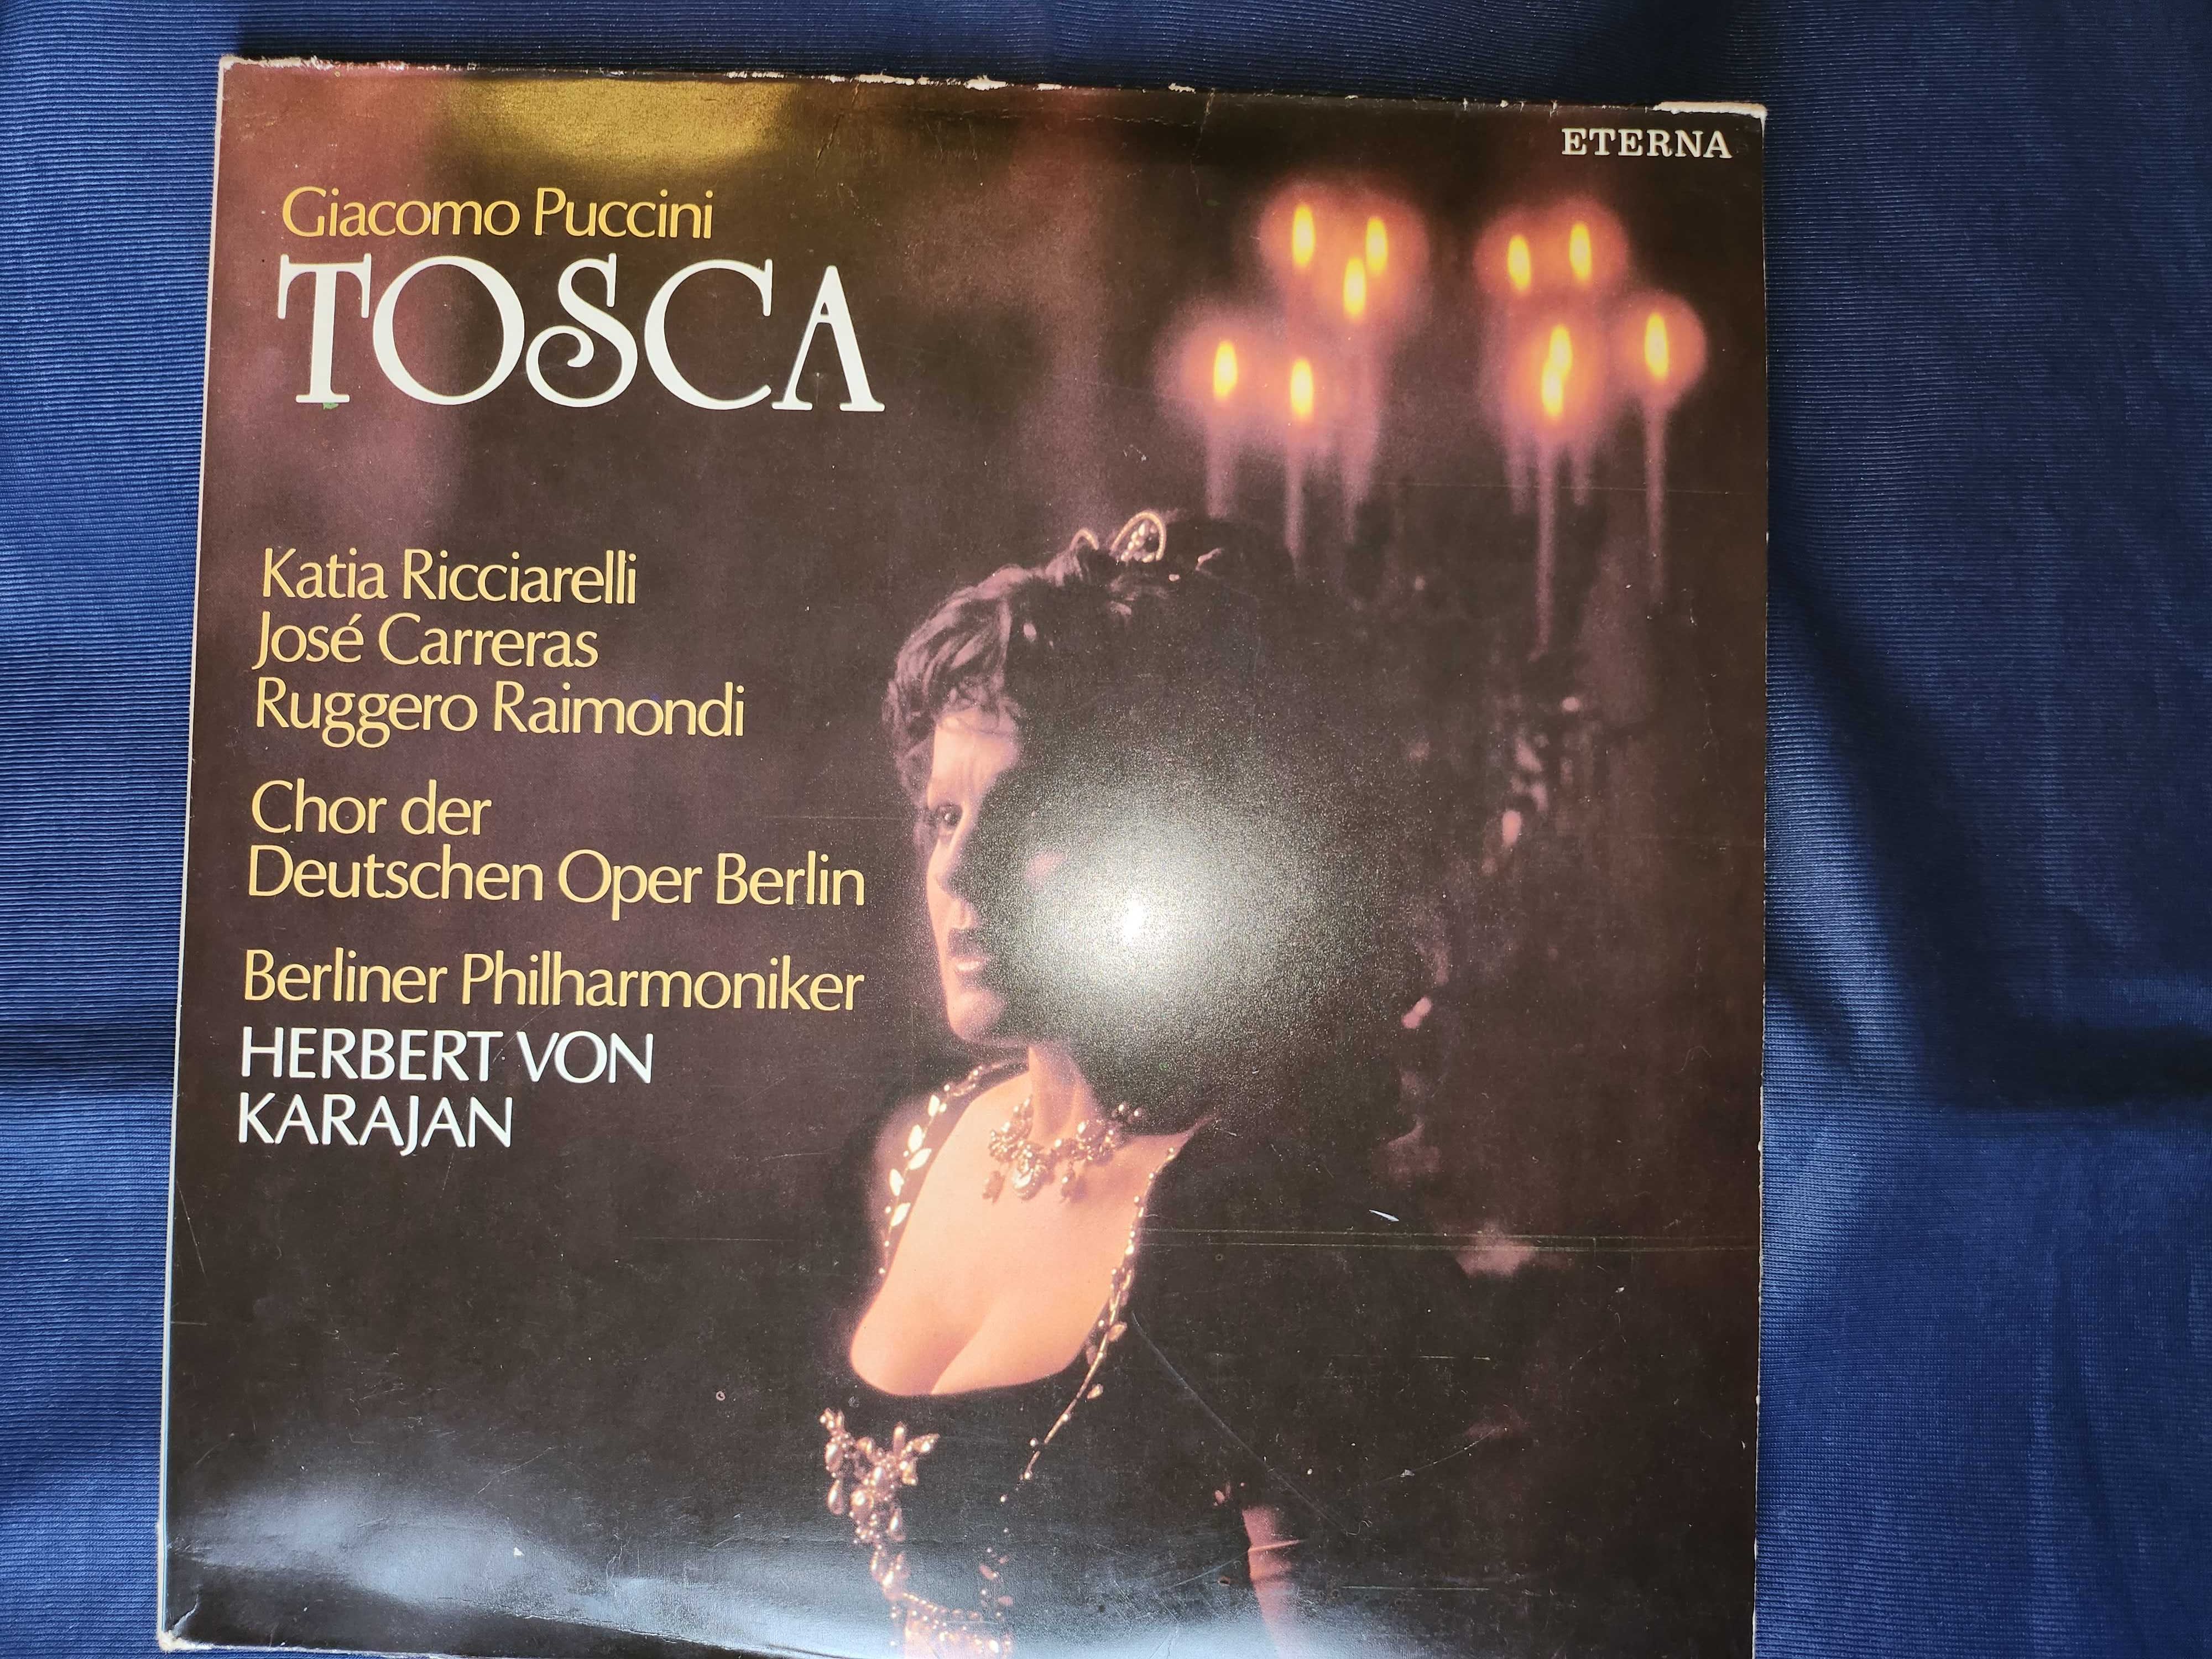 Бетховен - 9 симфонии, 8 LP vinyl, дирижира Караян и "Тоска" с Карерас